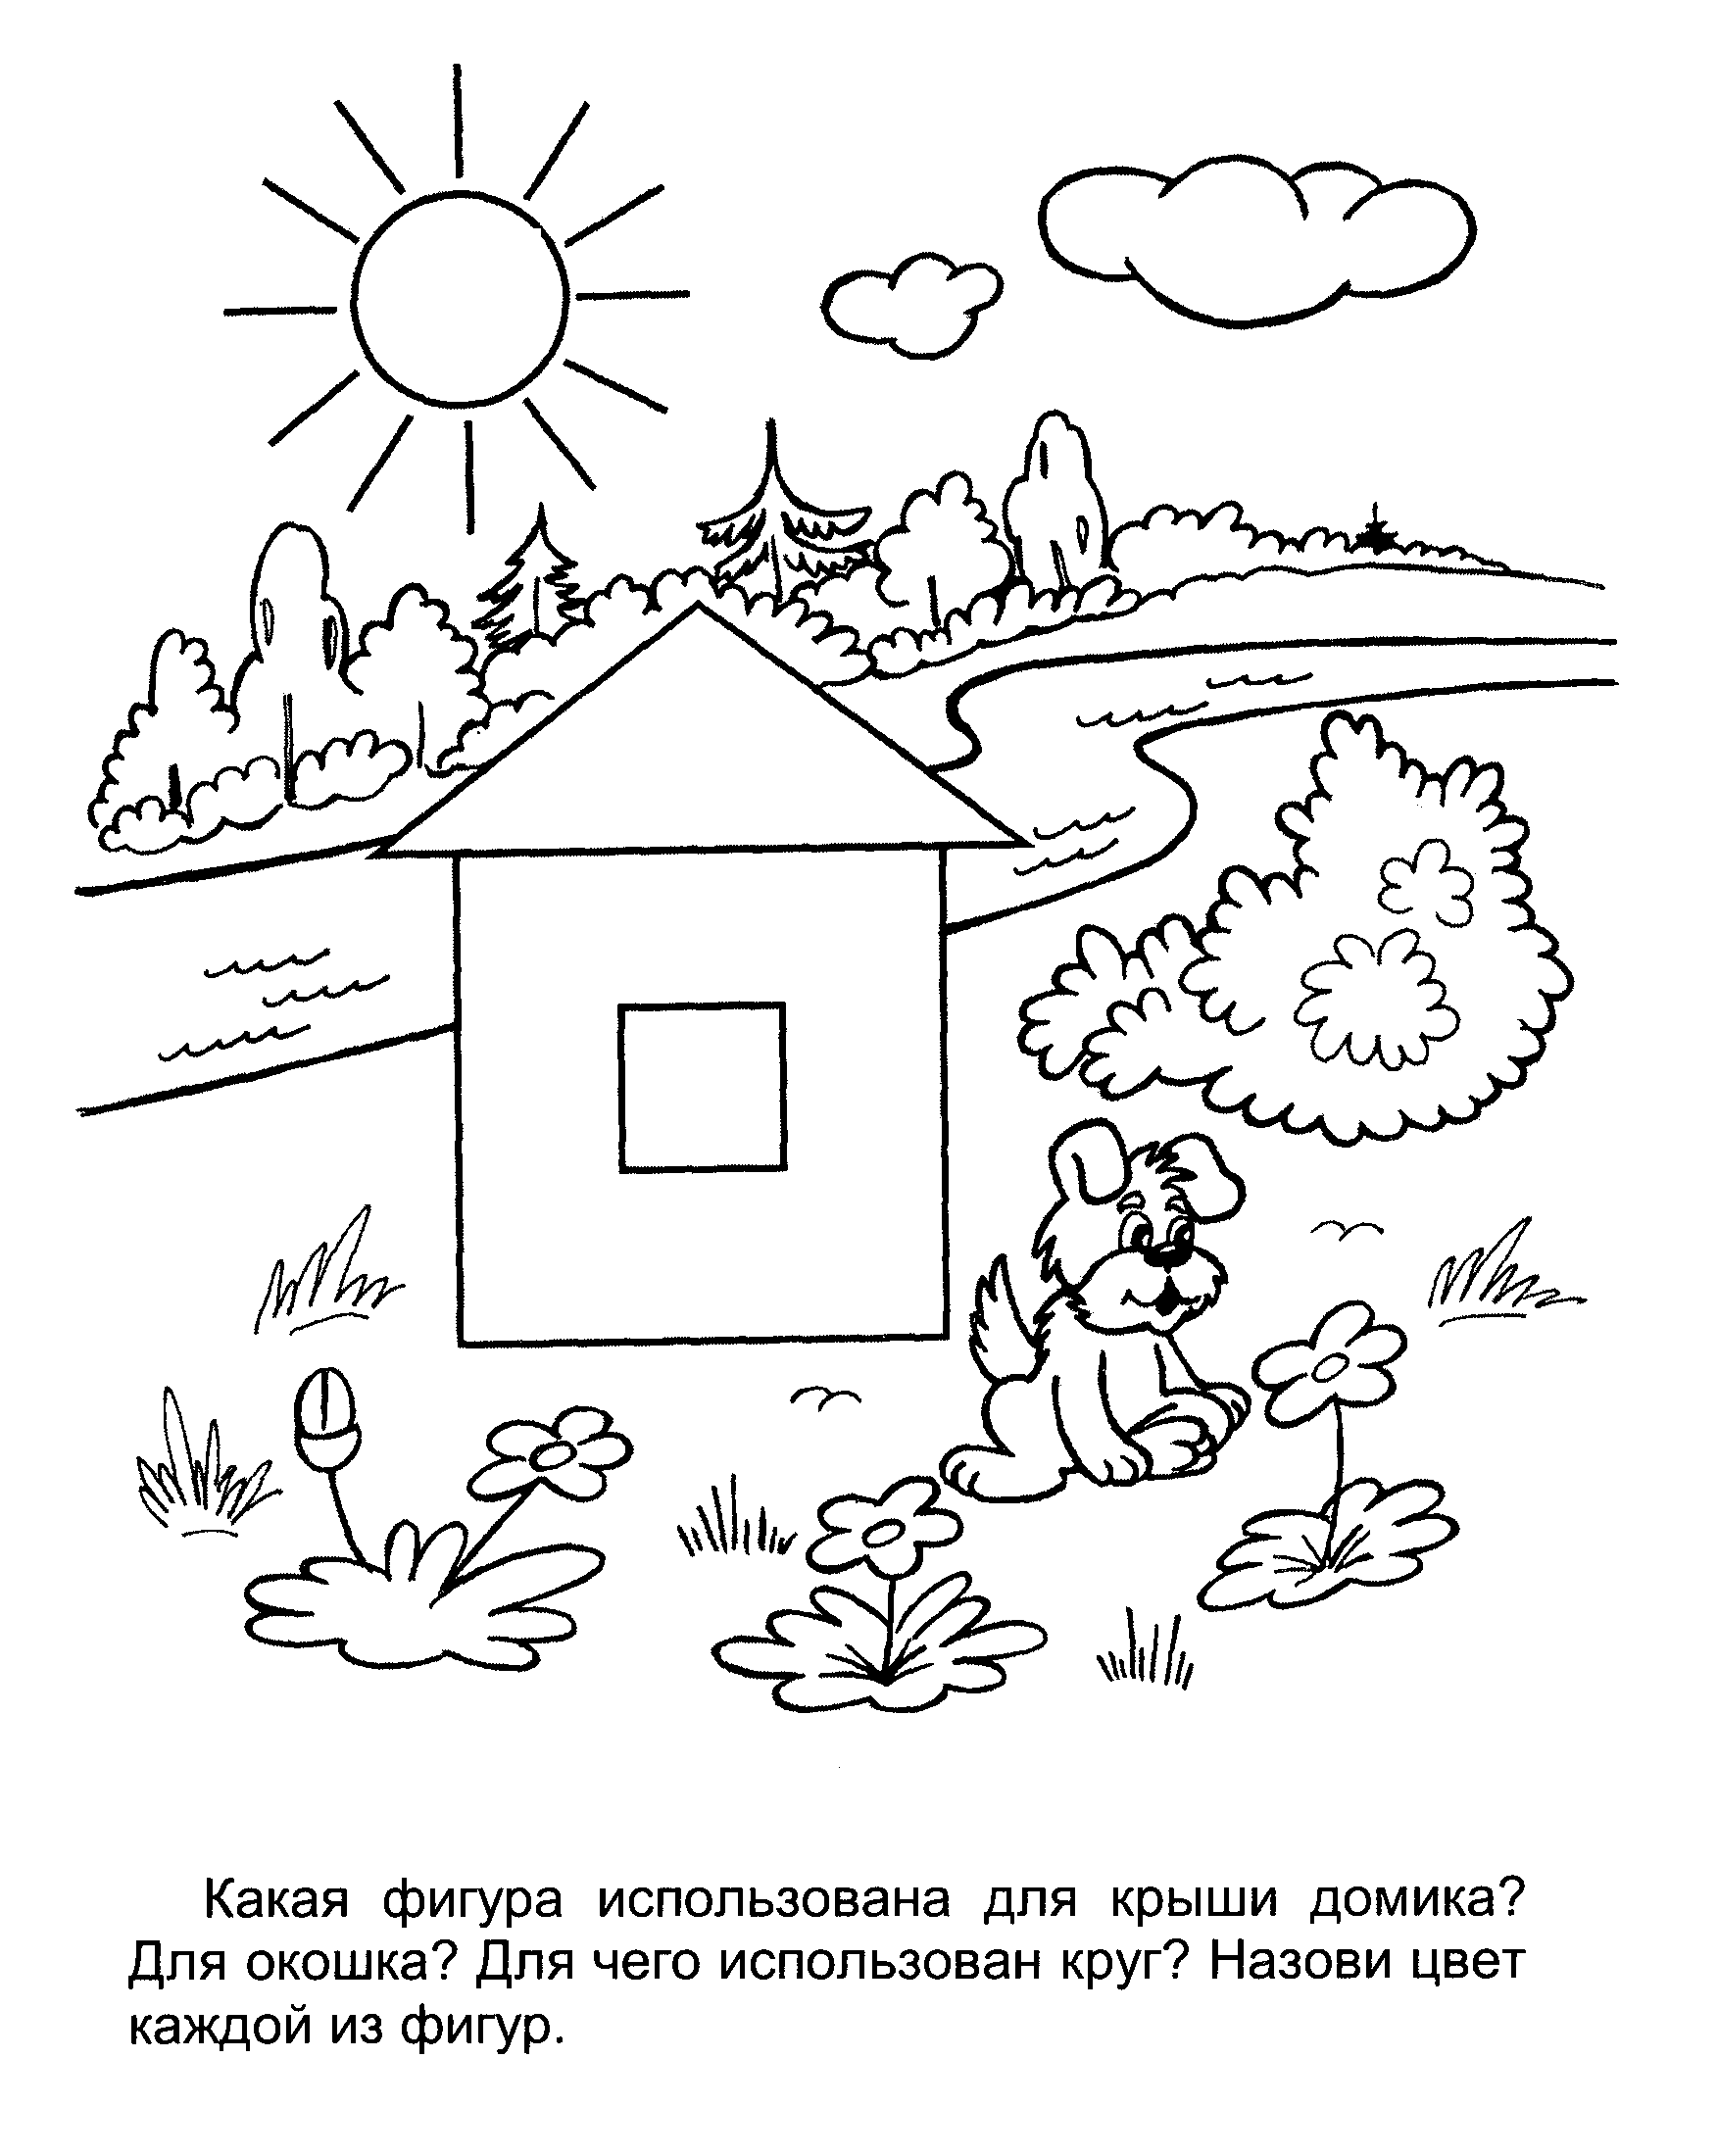 Раскраски Раскрась геометрические фигуры поляна дом лес солнце облако щенок